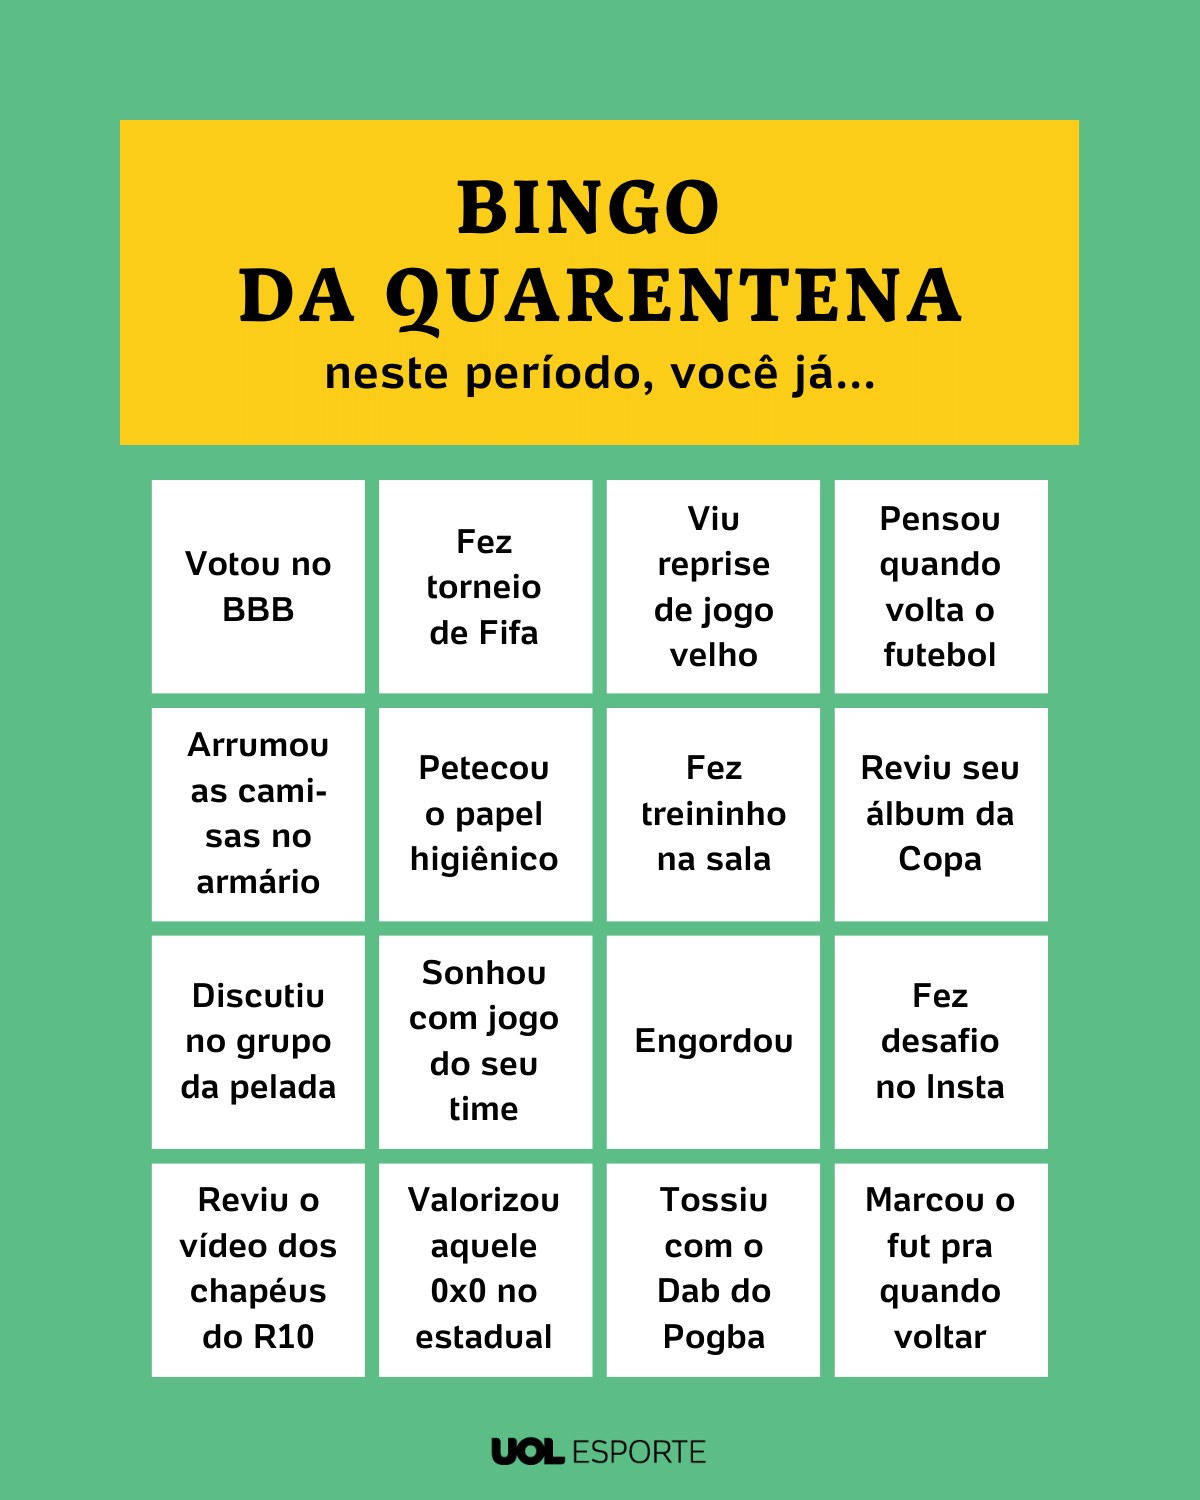 Bingo online brasileiro - Avaliação das melhores salas